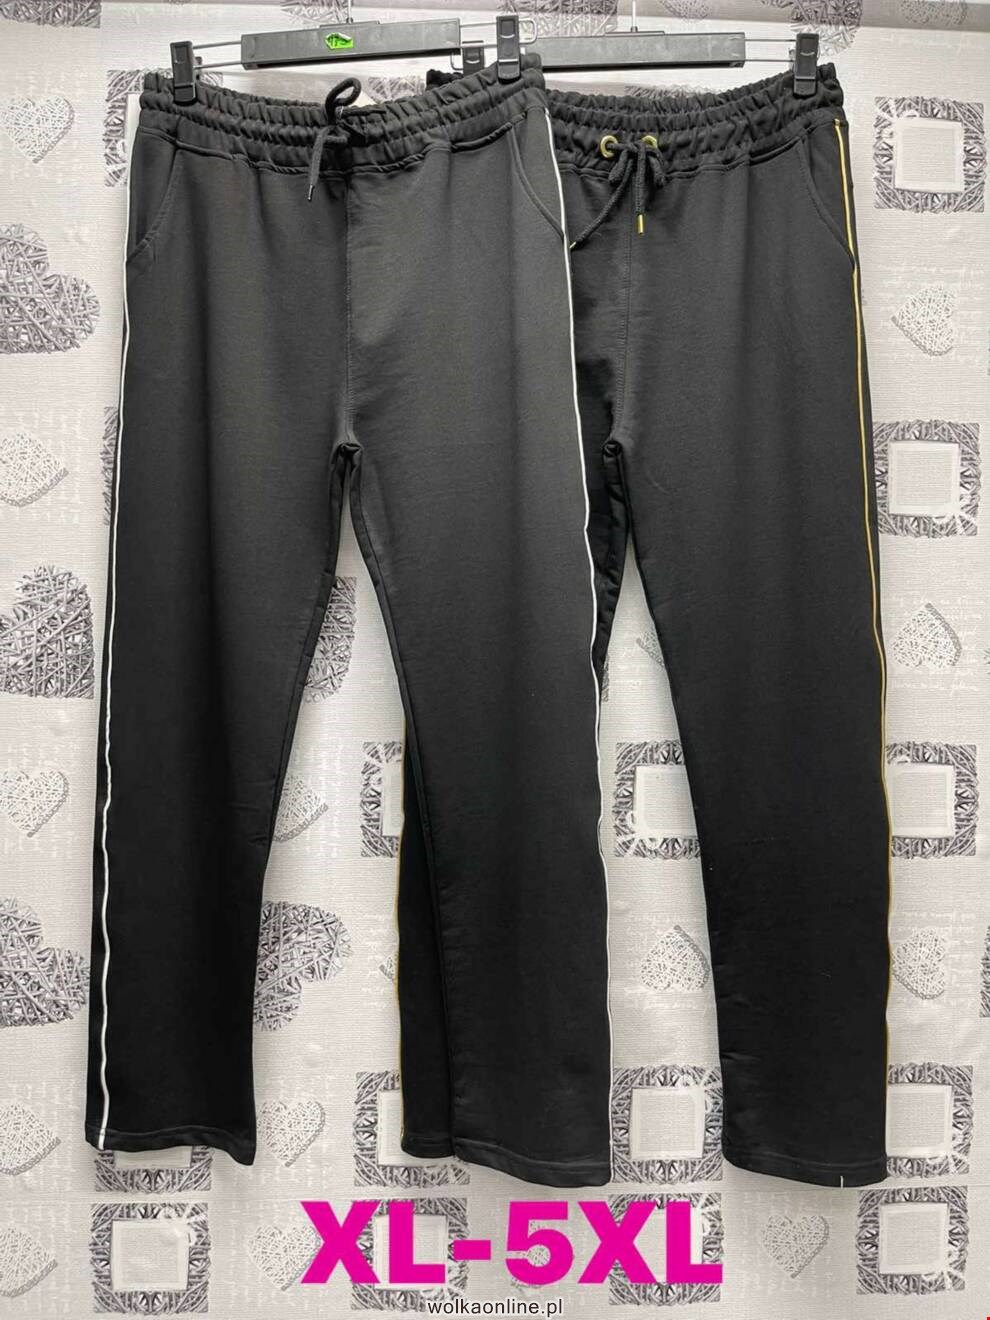 Spodnie damskie Q1551 MIX KOLOR XL-5XL (Towar Tureckie)  